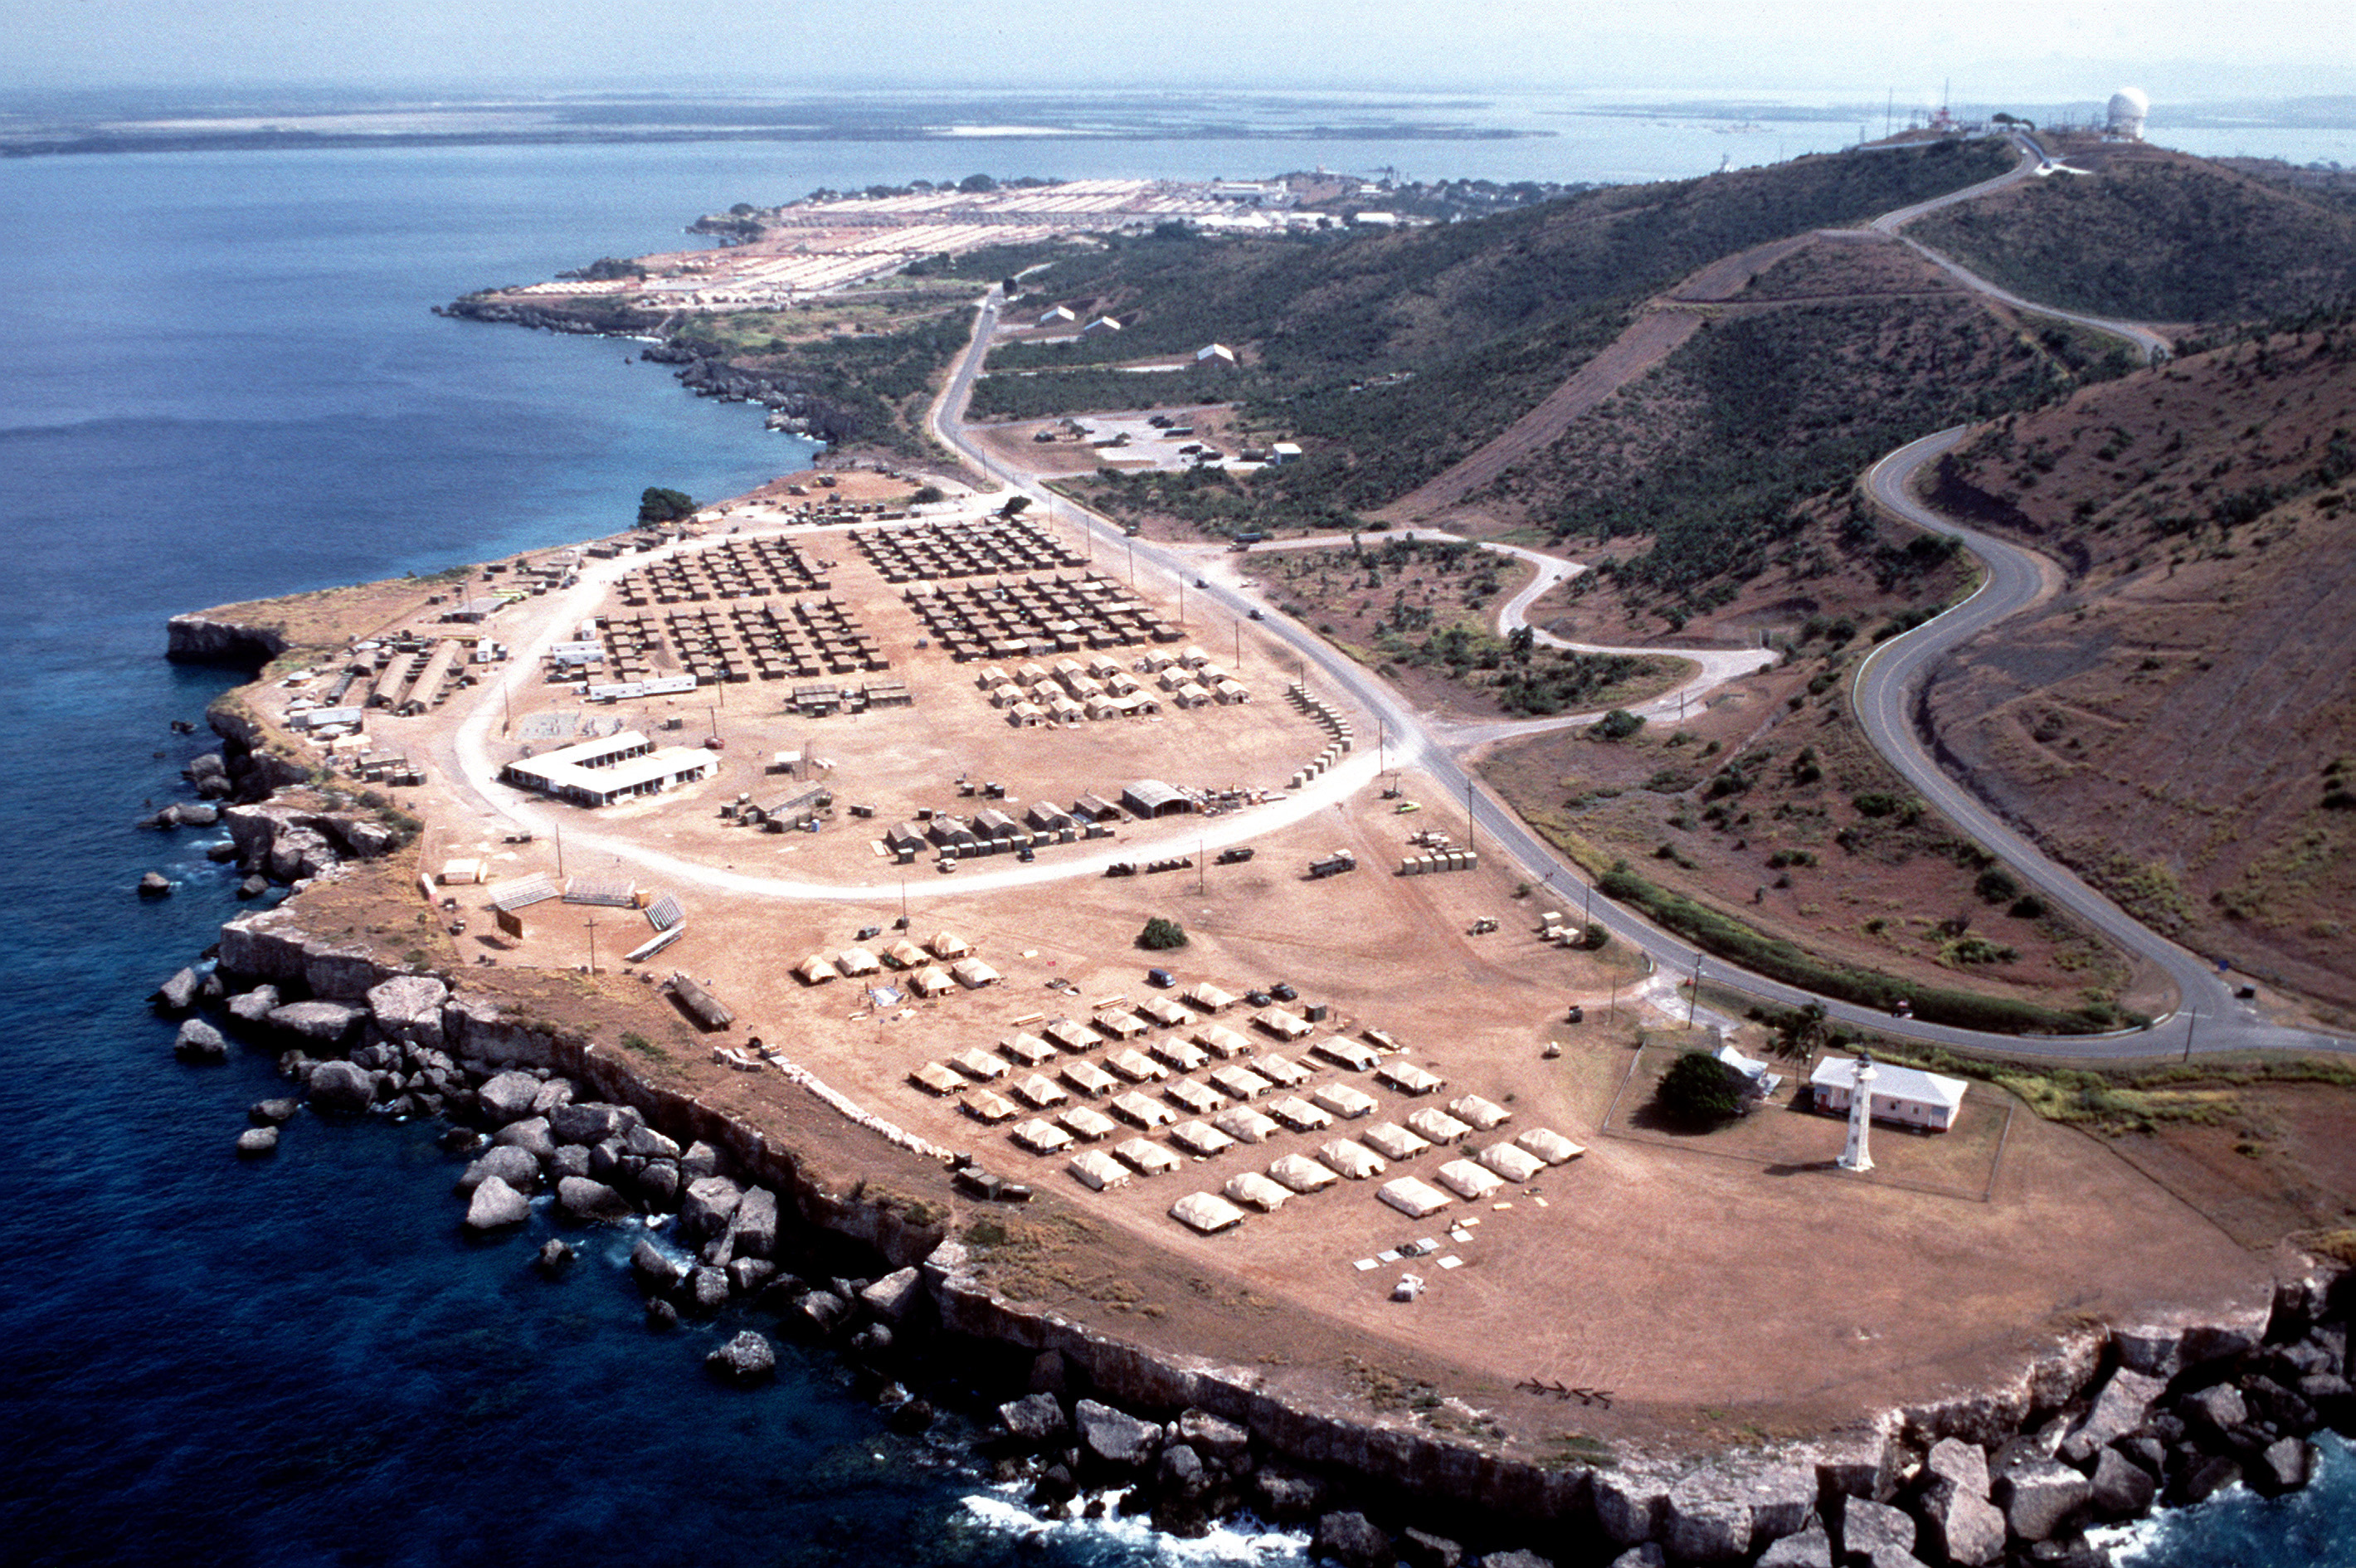 JTF_160_Camp_Phillips_at_Guantanamo_1994.jpeg